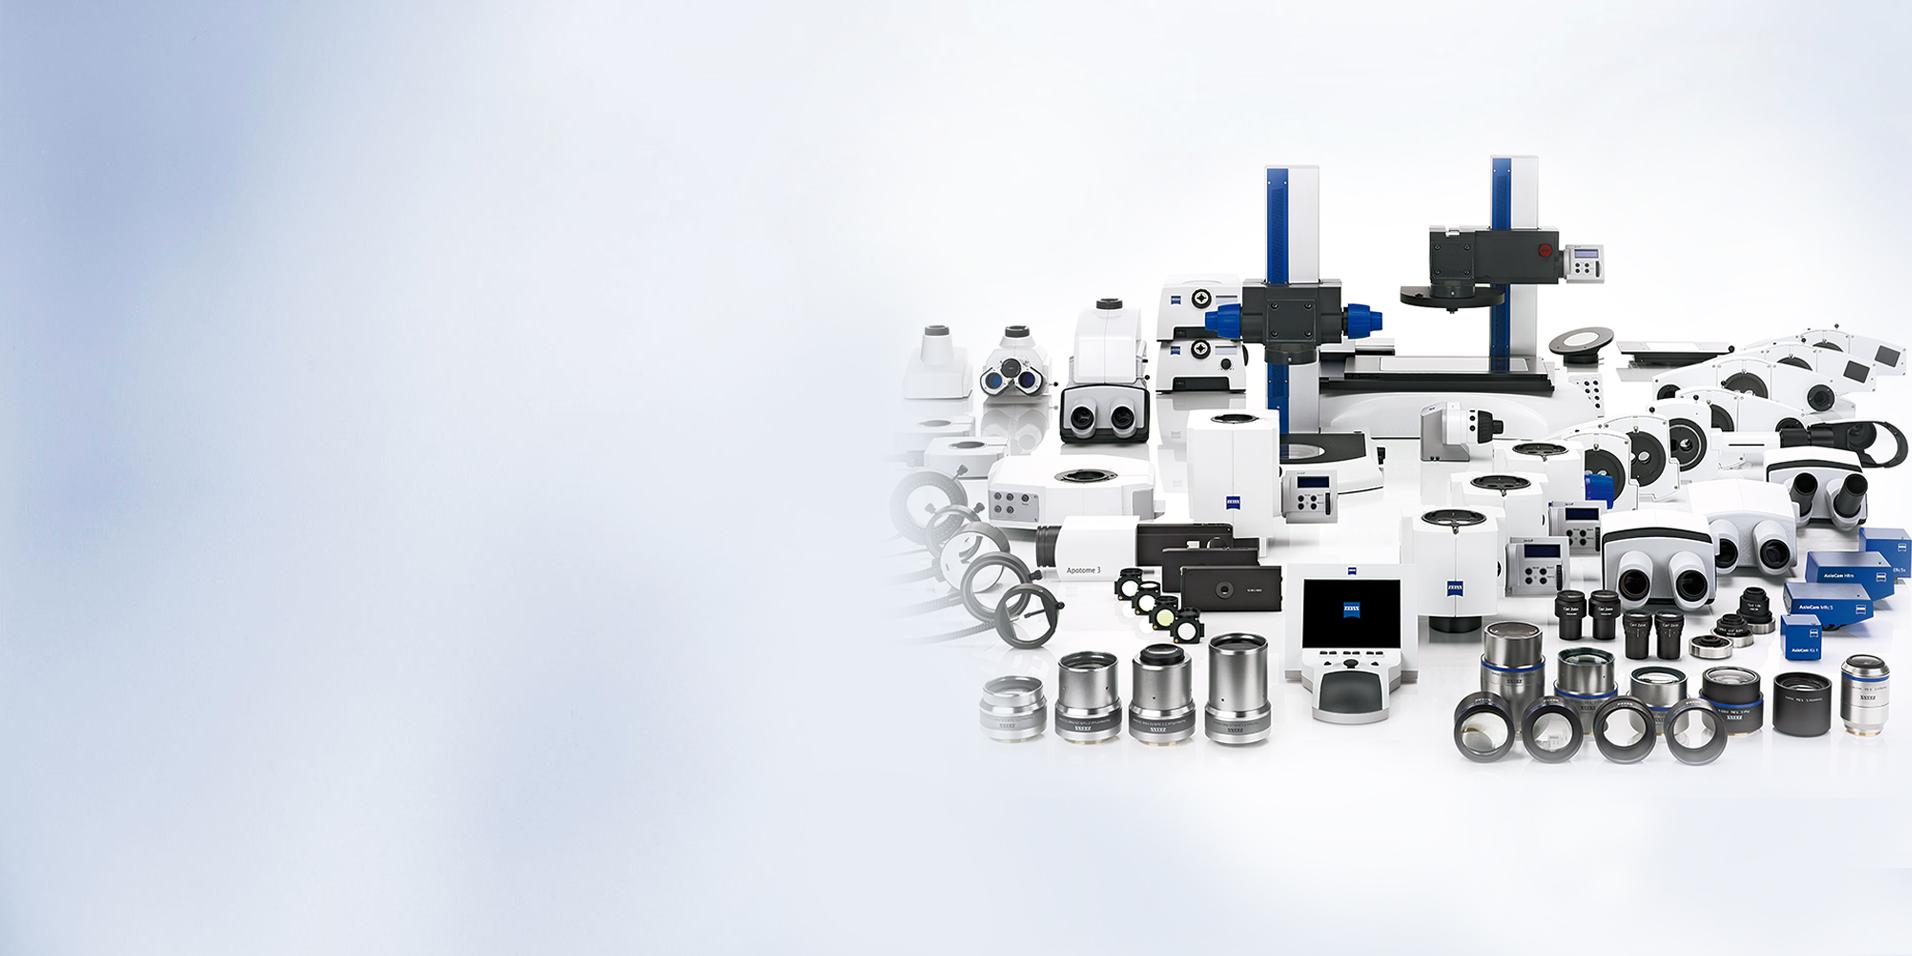 Conception modulaire - adaptez le microscope à vos applications​